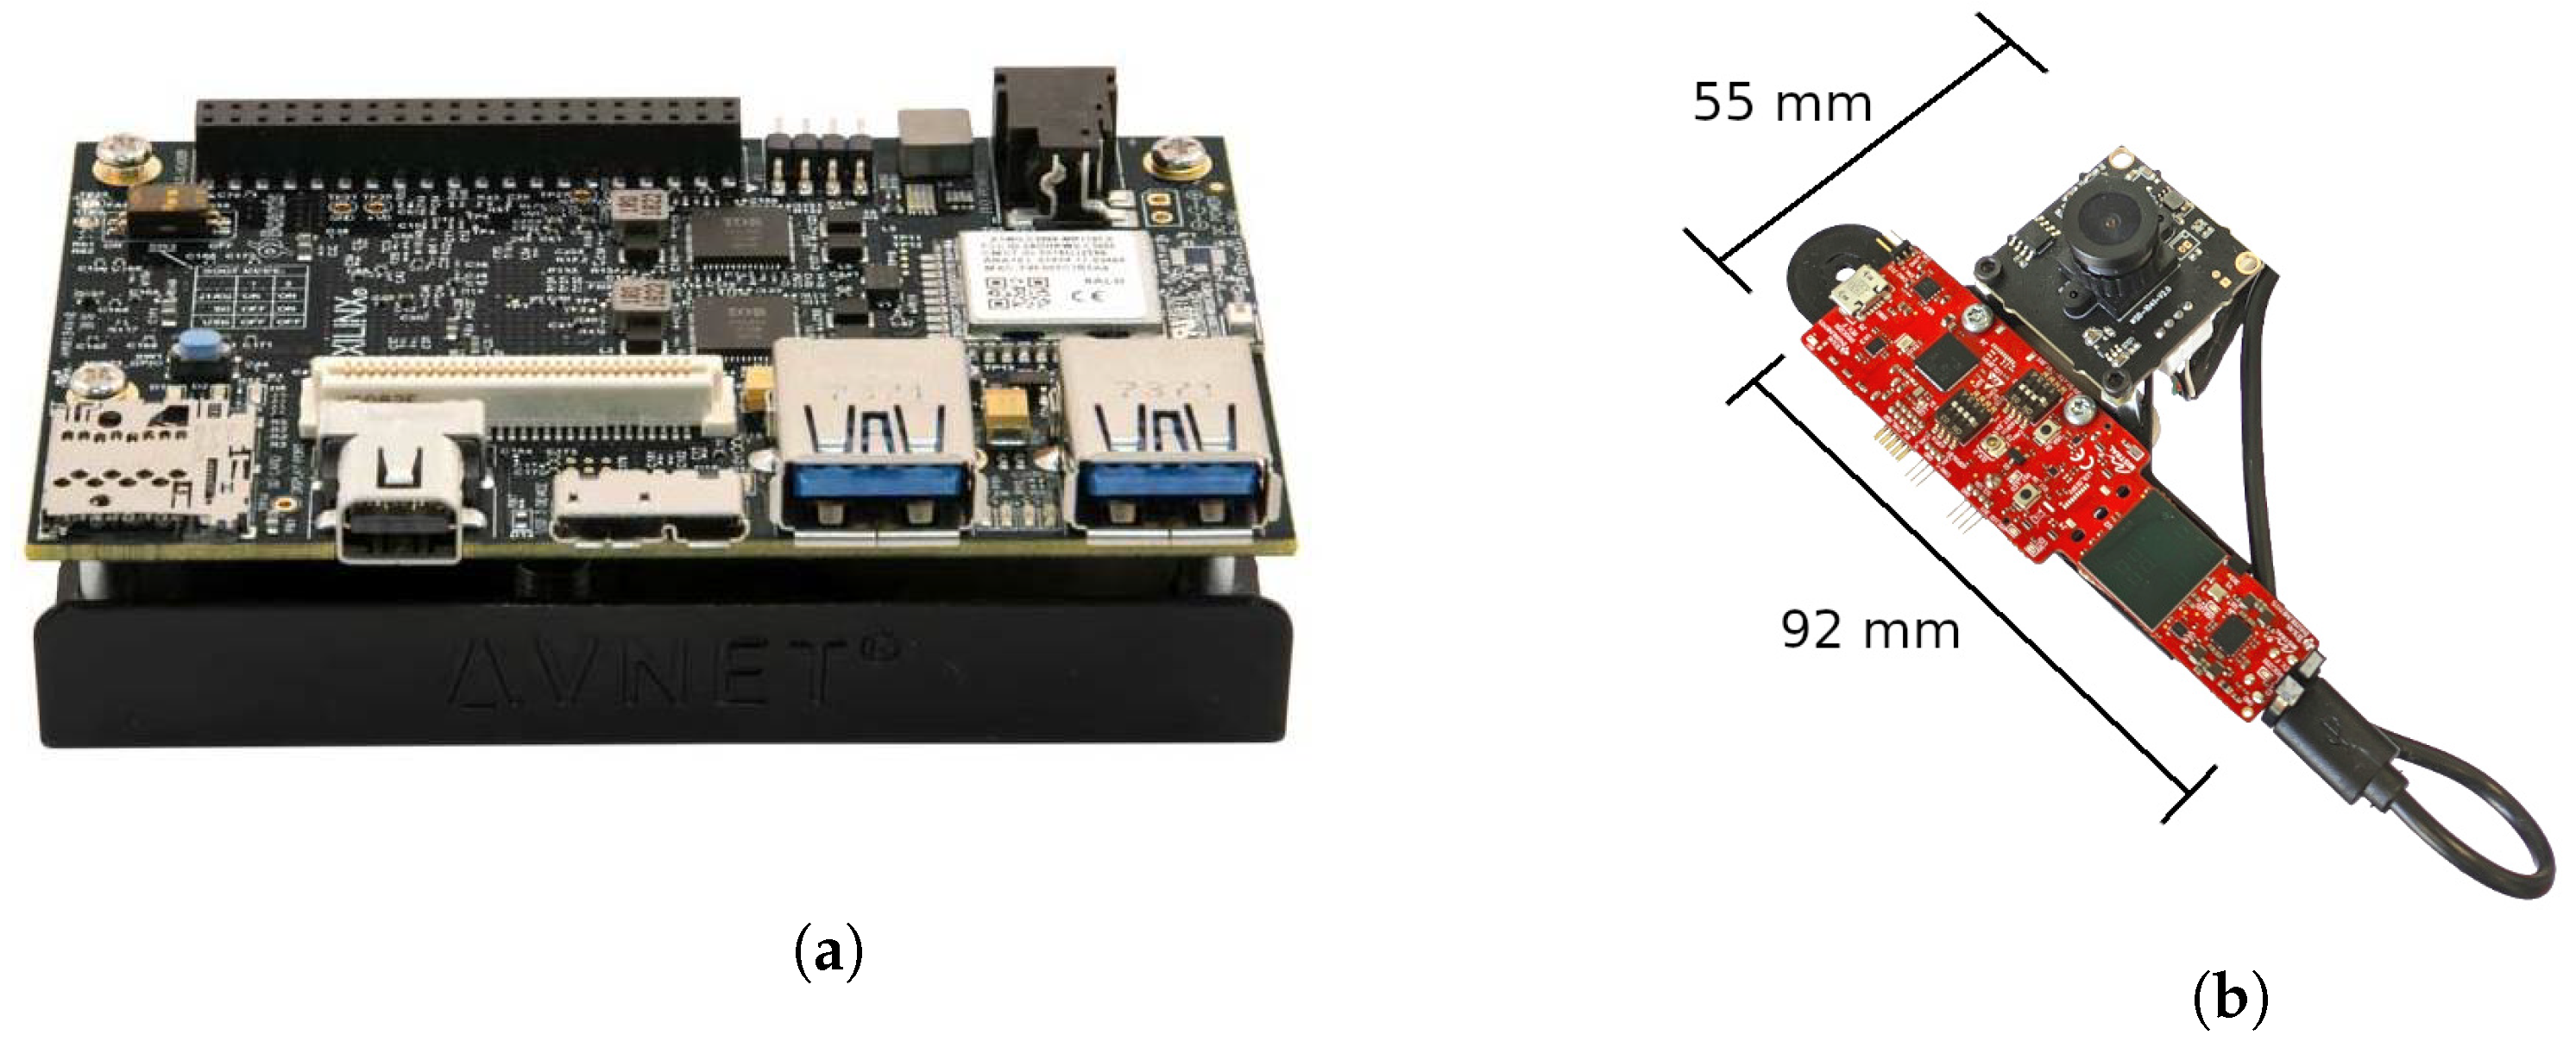 Avnet ULTRA96-V2 Zynq開発ボードセット FPGA 未使用品